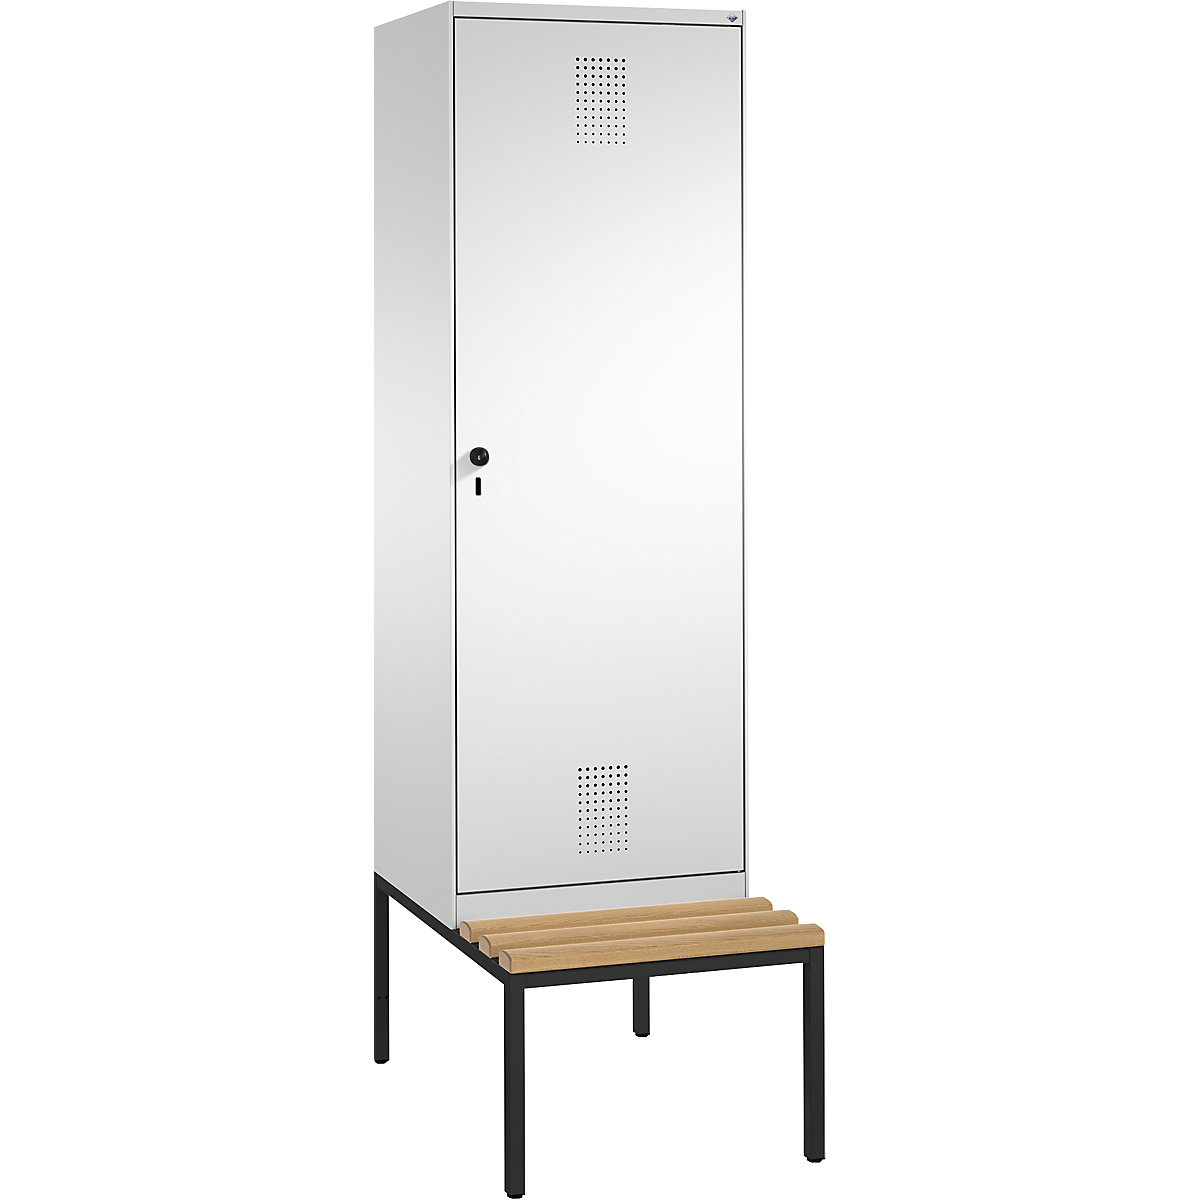 Šatní skříň s lavicí EVOLO s dveřmi přes 2 oddíly – C+P, 2 oddíly, 1 dveře, šířka oddílu 300 mm, světlá šedá-6